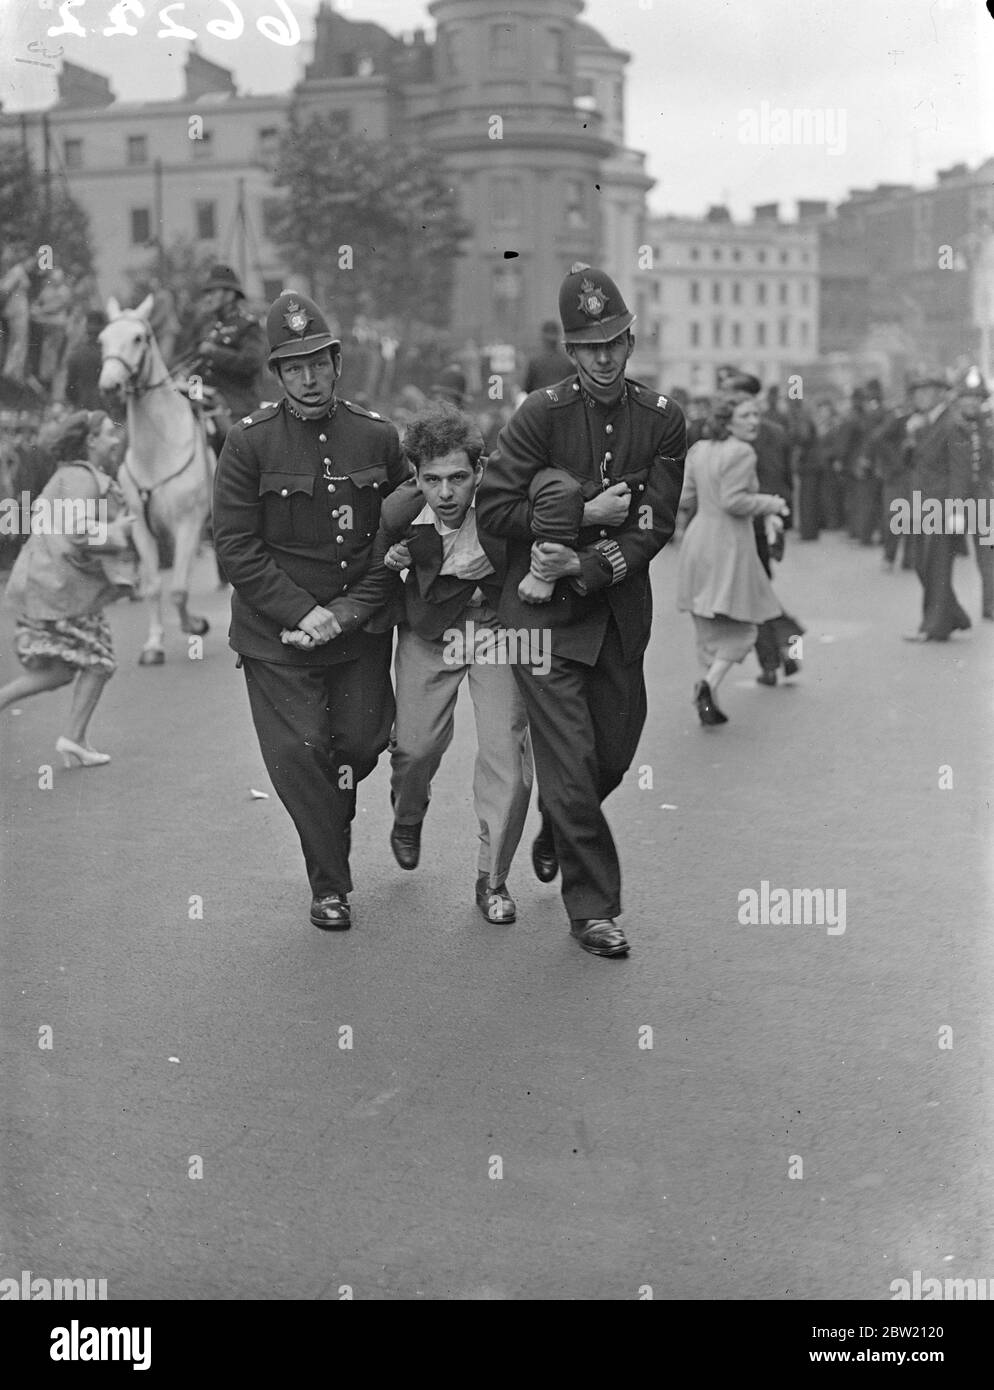 Dimostratore di arresto della polizia alla riunione di Trafalgar Square. Feroci combattimenti tra fascisti e loro avversari, scoppiarono in Trafalgar Square quando Sir Oswald Mosley, leader dell'Unione dei fascisti britannici, si rivolse ad un incontro dei suoi seguaci. Centinaia di forze di polizia erano pronte ad affrontare i disordini. Foto mostra, un dimostratore che è marciato via da due poliziotti. 4 luglio 1937 Foto Stock